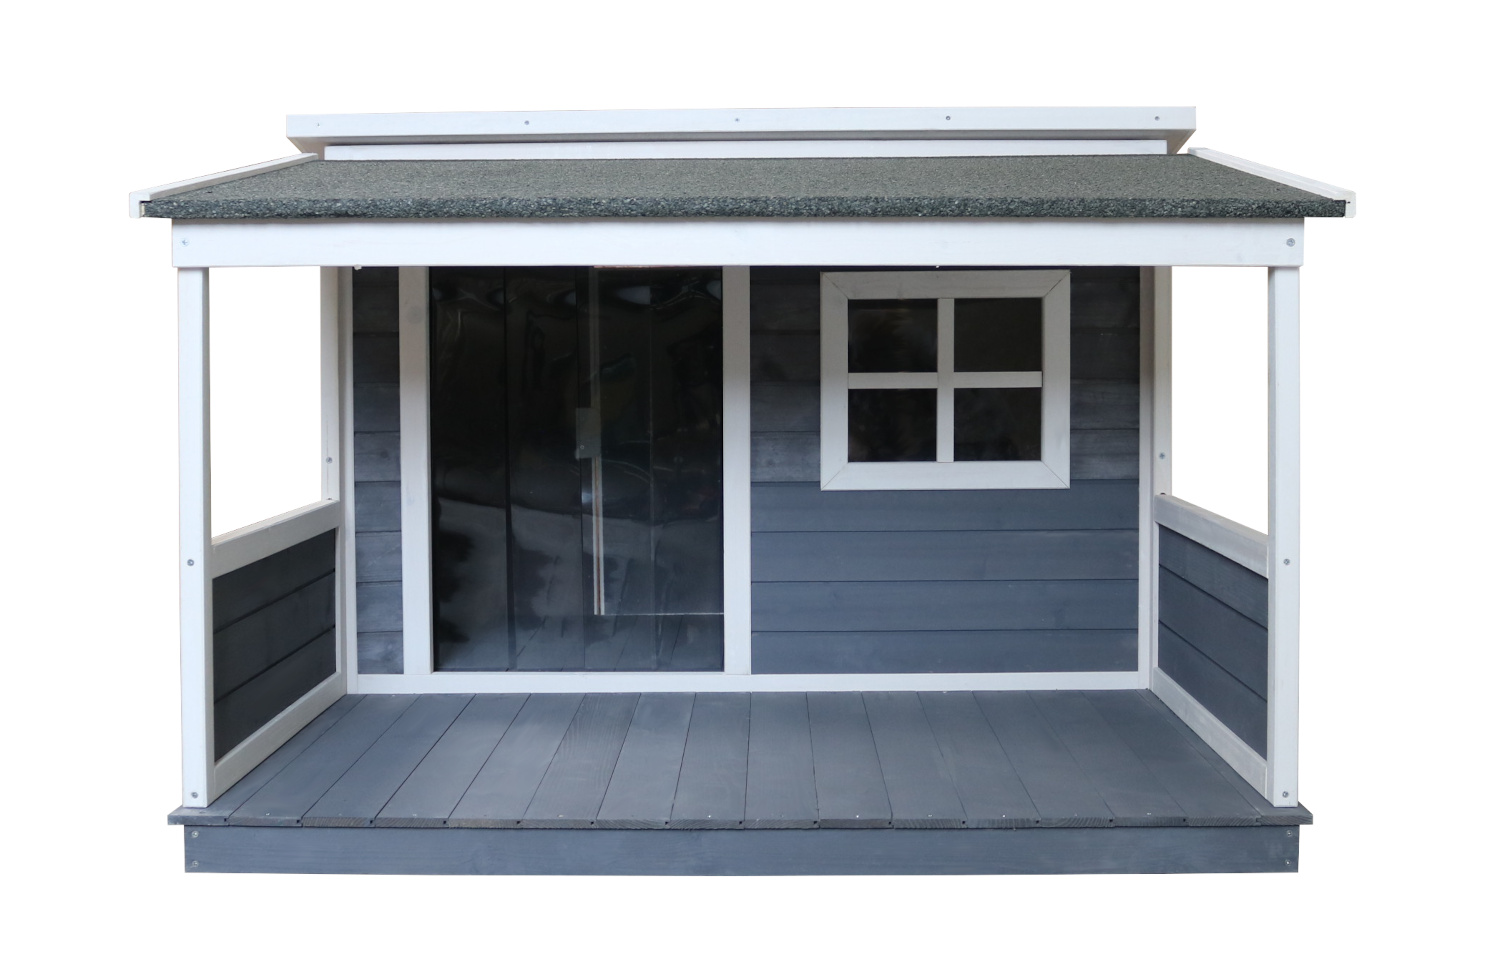 Holz-Hundehütte mit Pultdach und Terrasse, grau-weiß lasiert, wetterfest